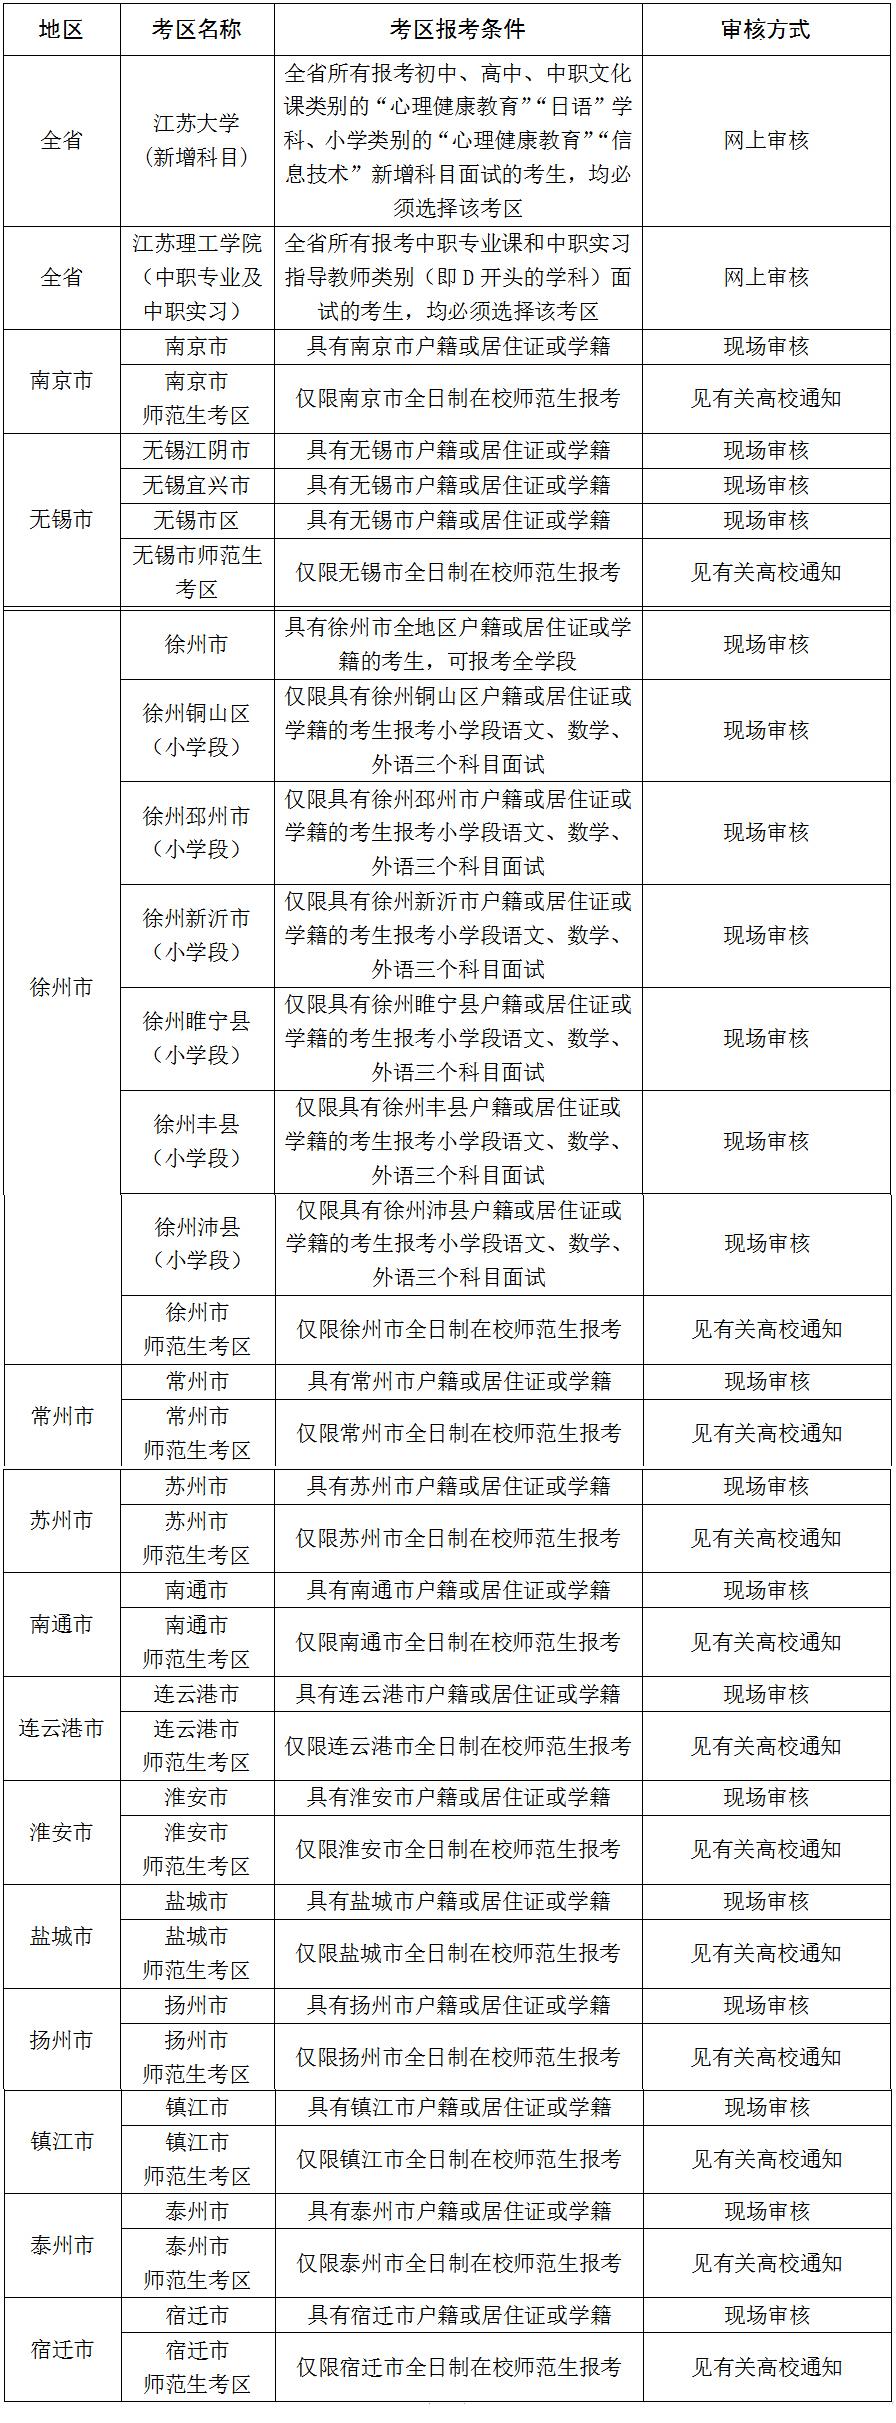 2020下半年江苏教师资格证南通考区面试考试时间及选报要求介绍